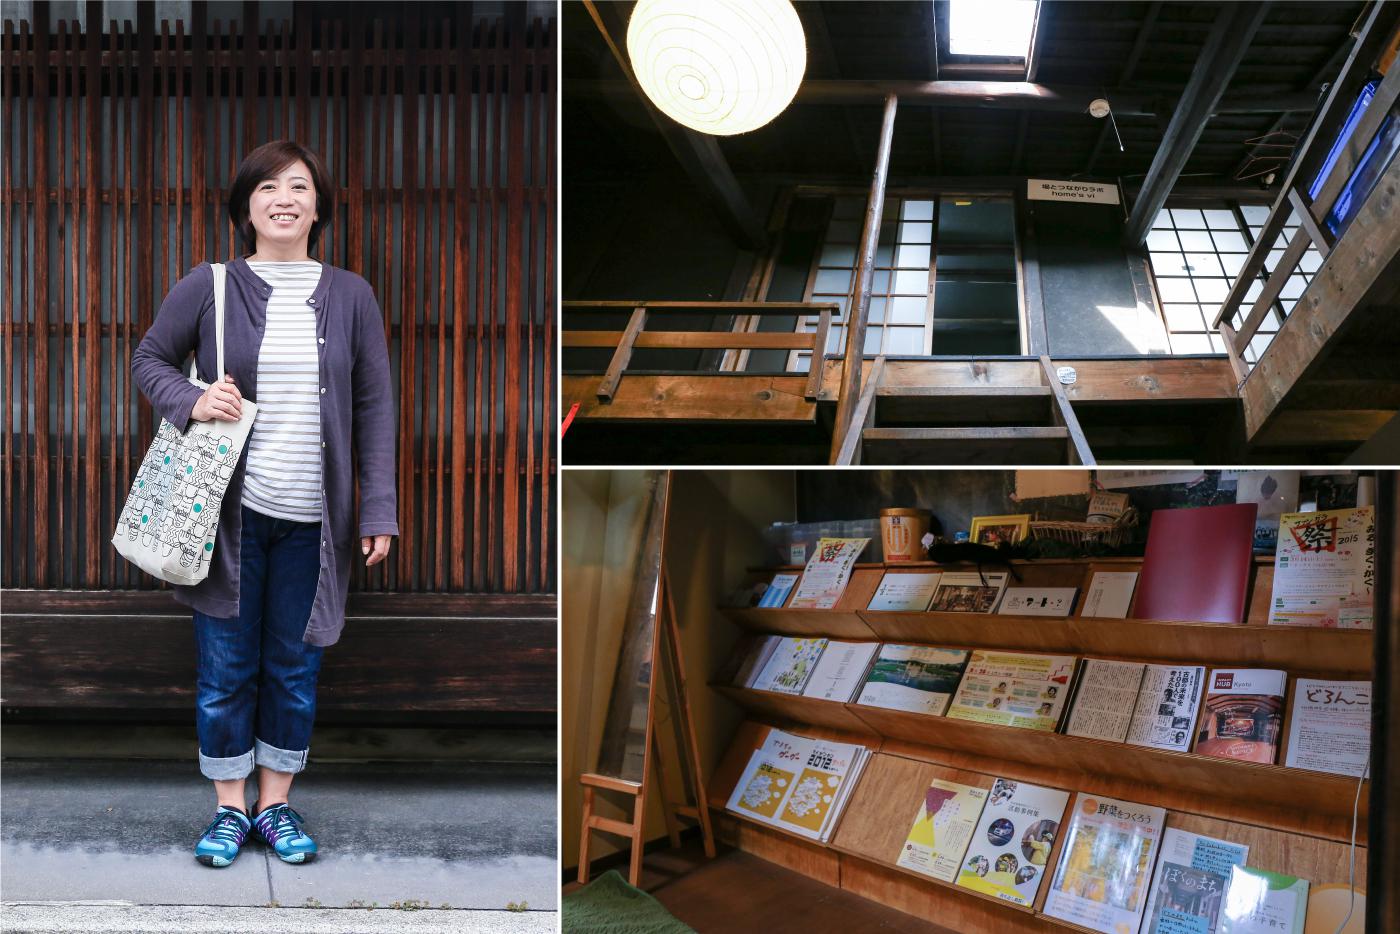 町家オフィスは京都らしい和の空間。本棚には対人関係やまちづくりに関連した雑誌や本が並ぶ